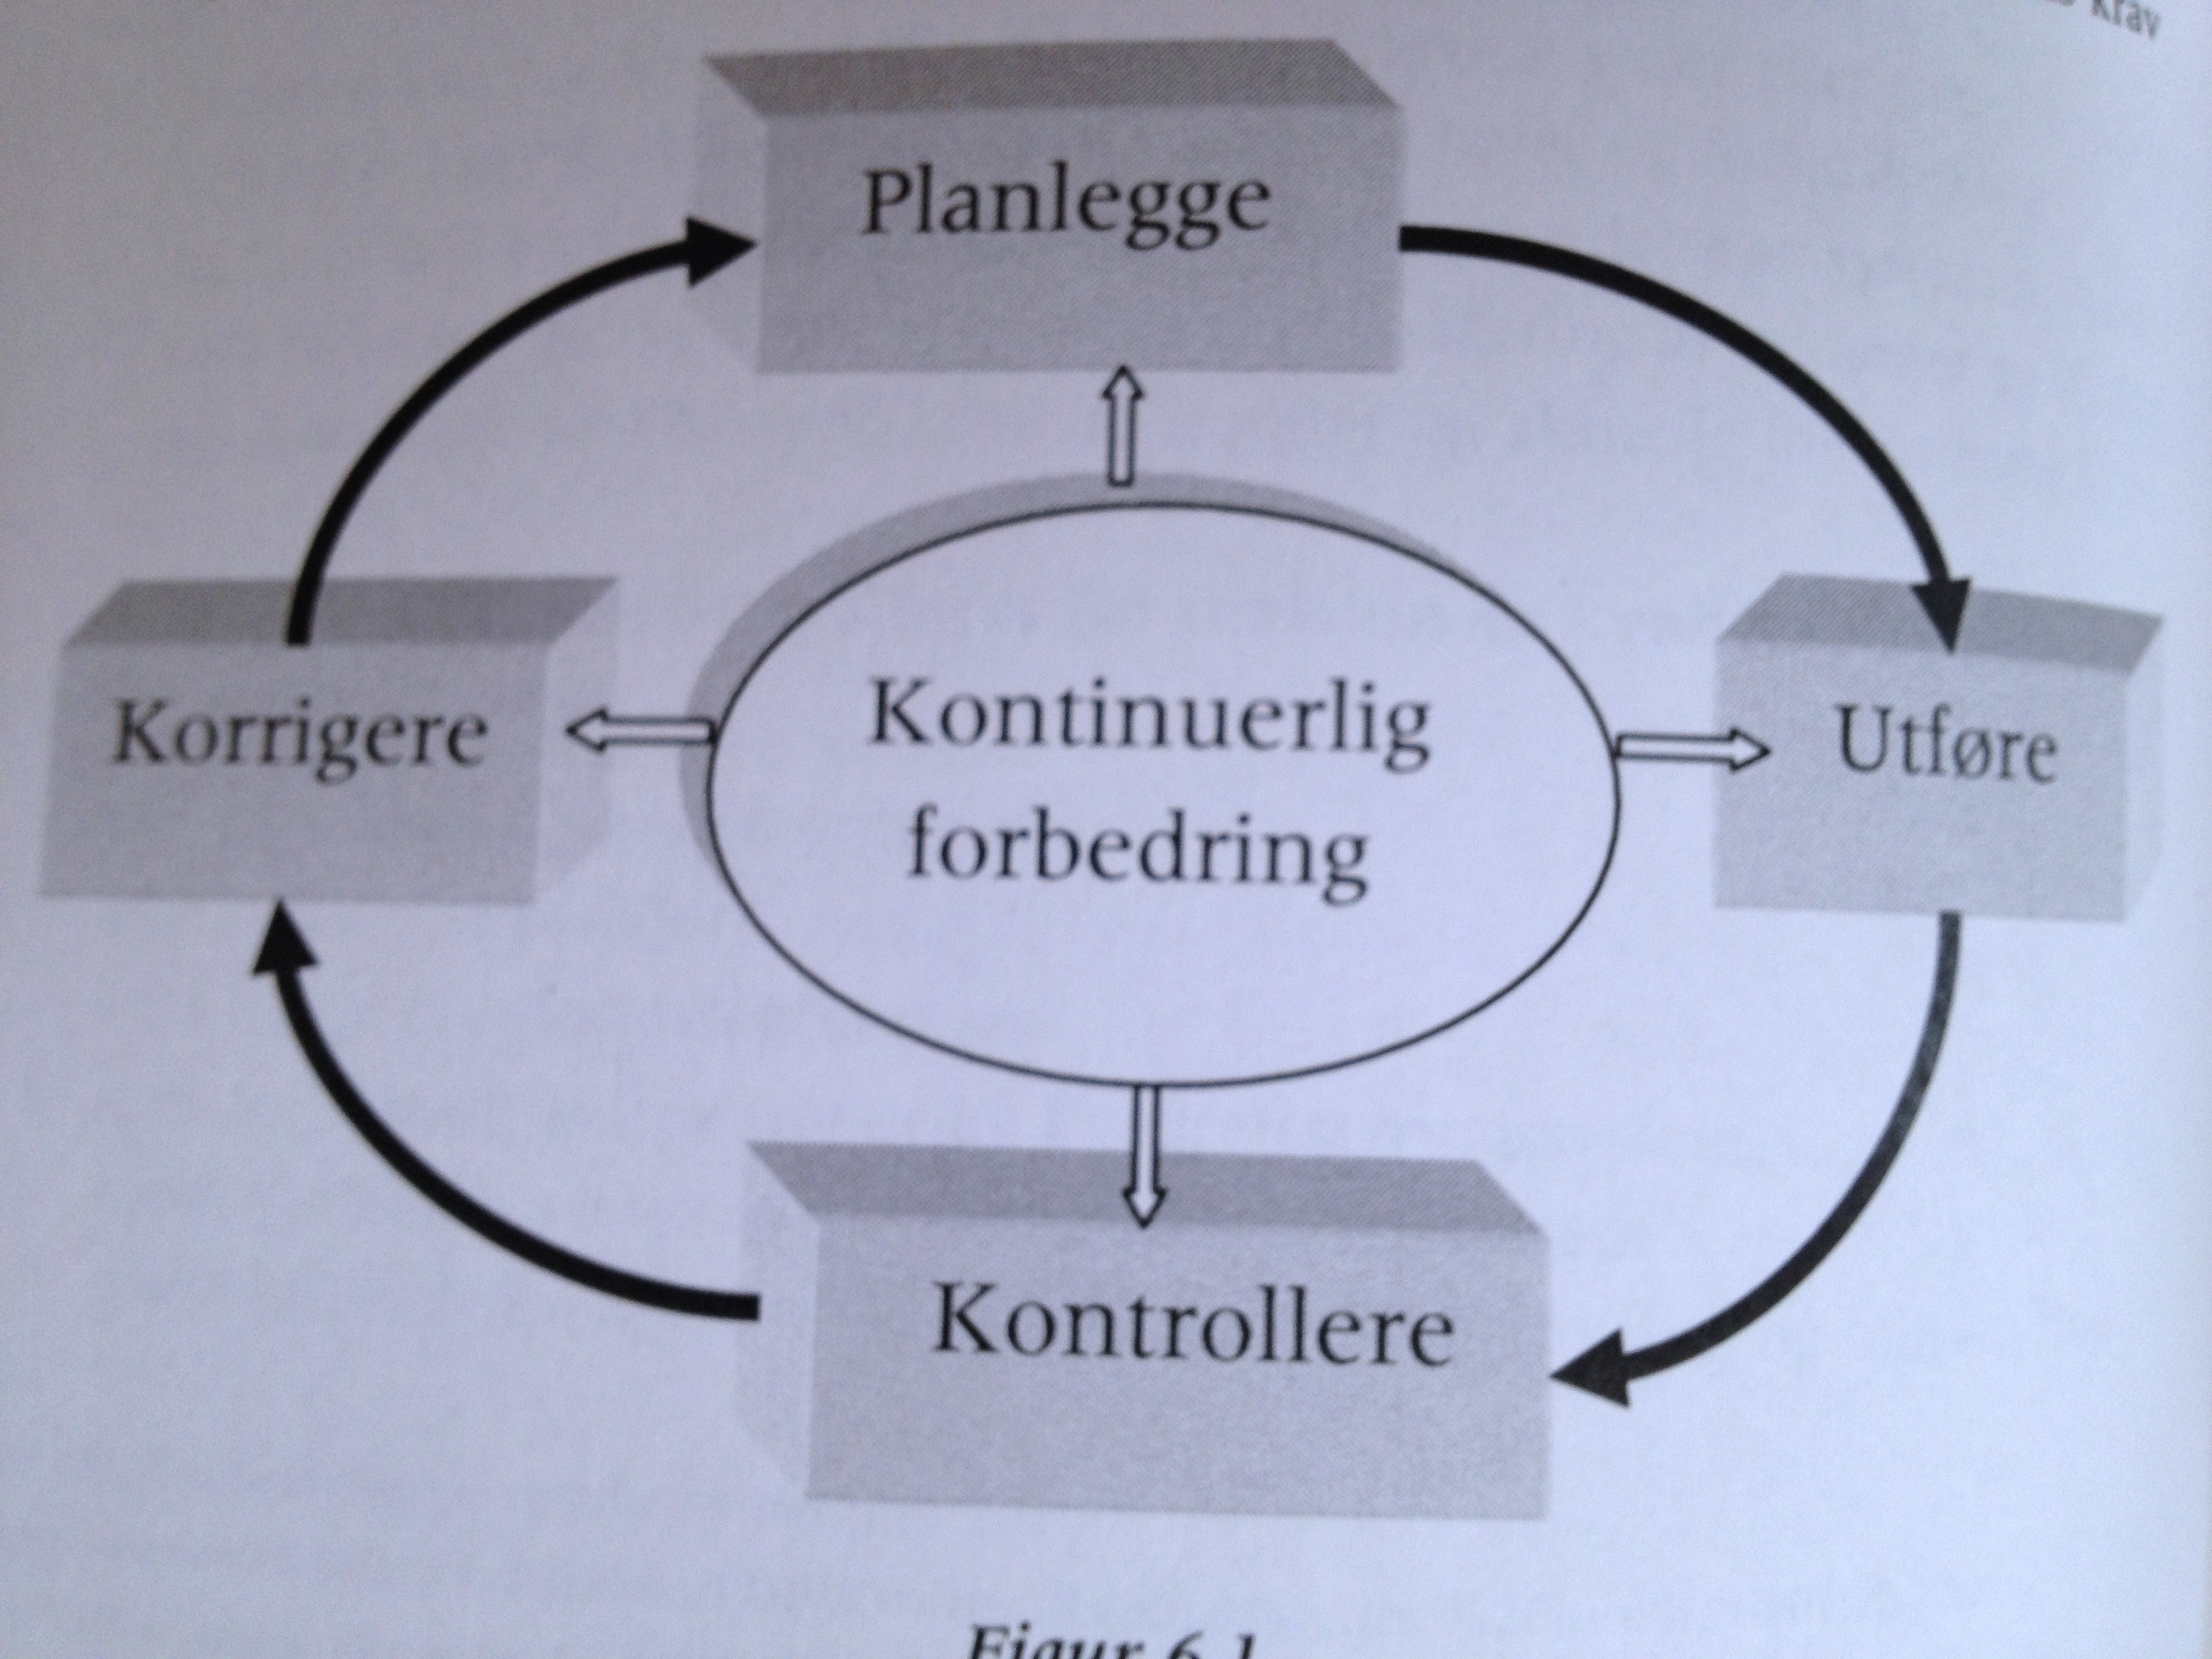 sammenlignes med modellen PUKK- hjulet for kontinuerlig forbedring ; planlegge, utføre, kontrollere og korrigere (Karlsen, 2010, s. 156).